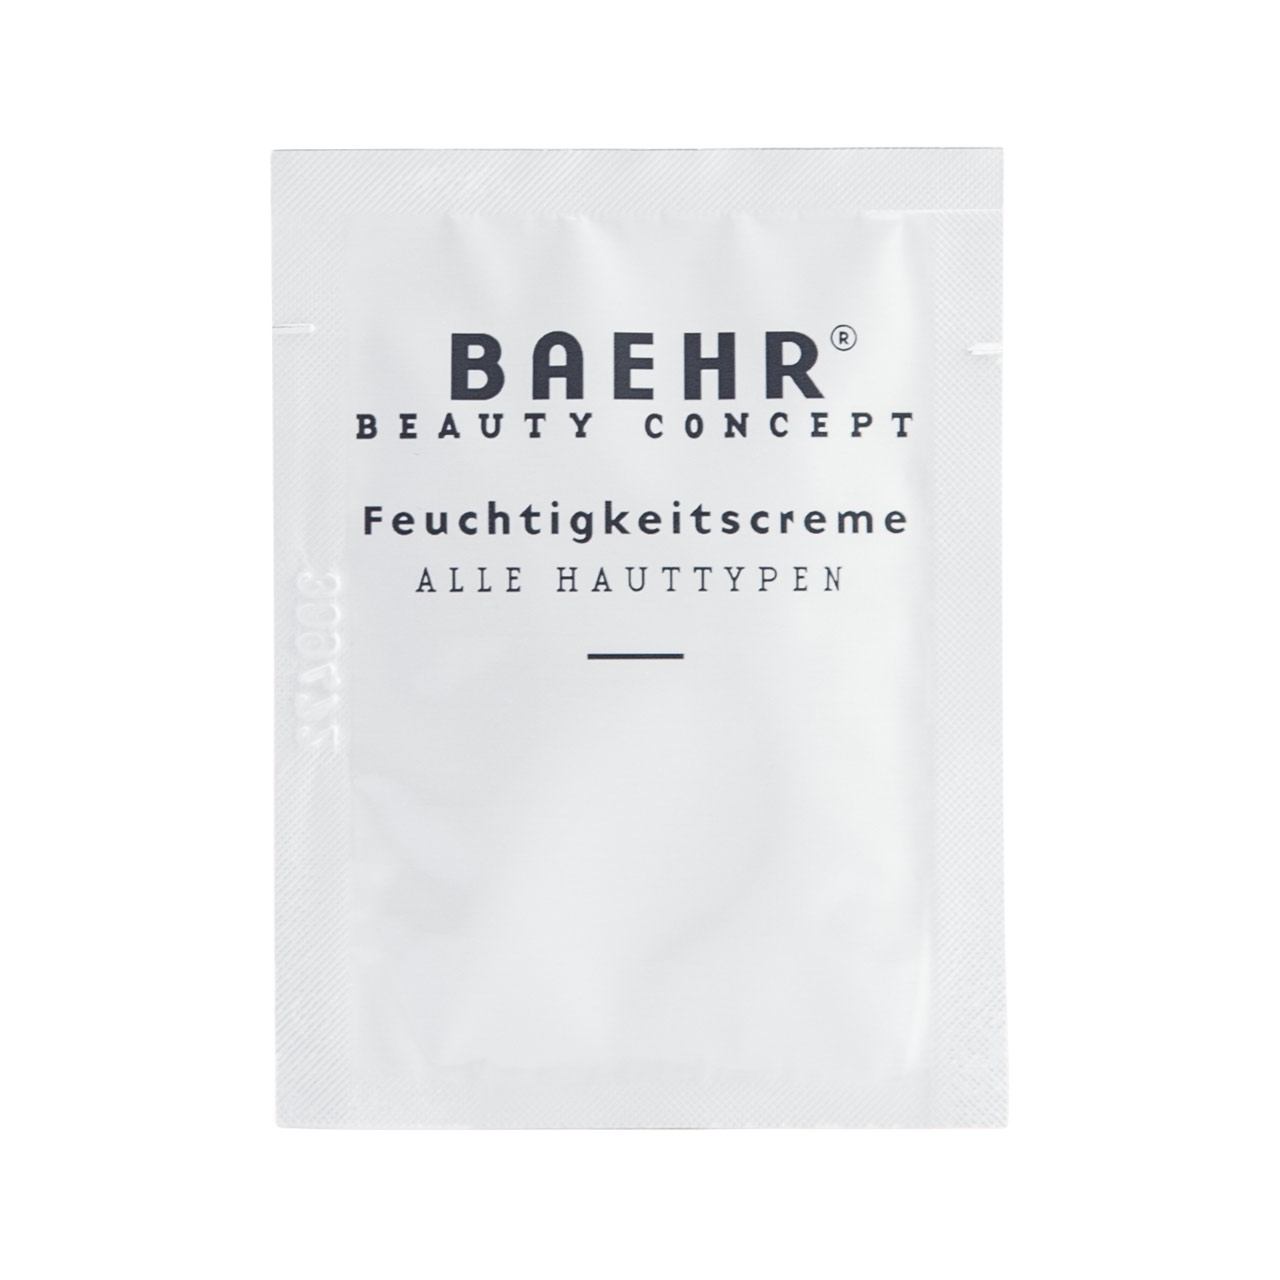 BAEHR BEAUTY CONCEPT - Feuchtigkeitscreme Probe, 1 Stück